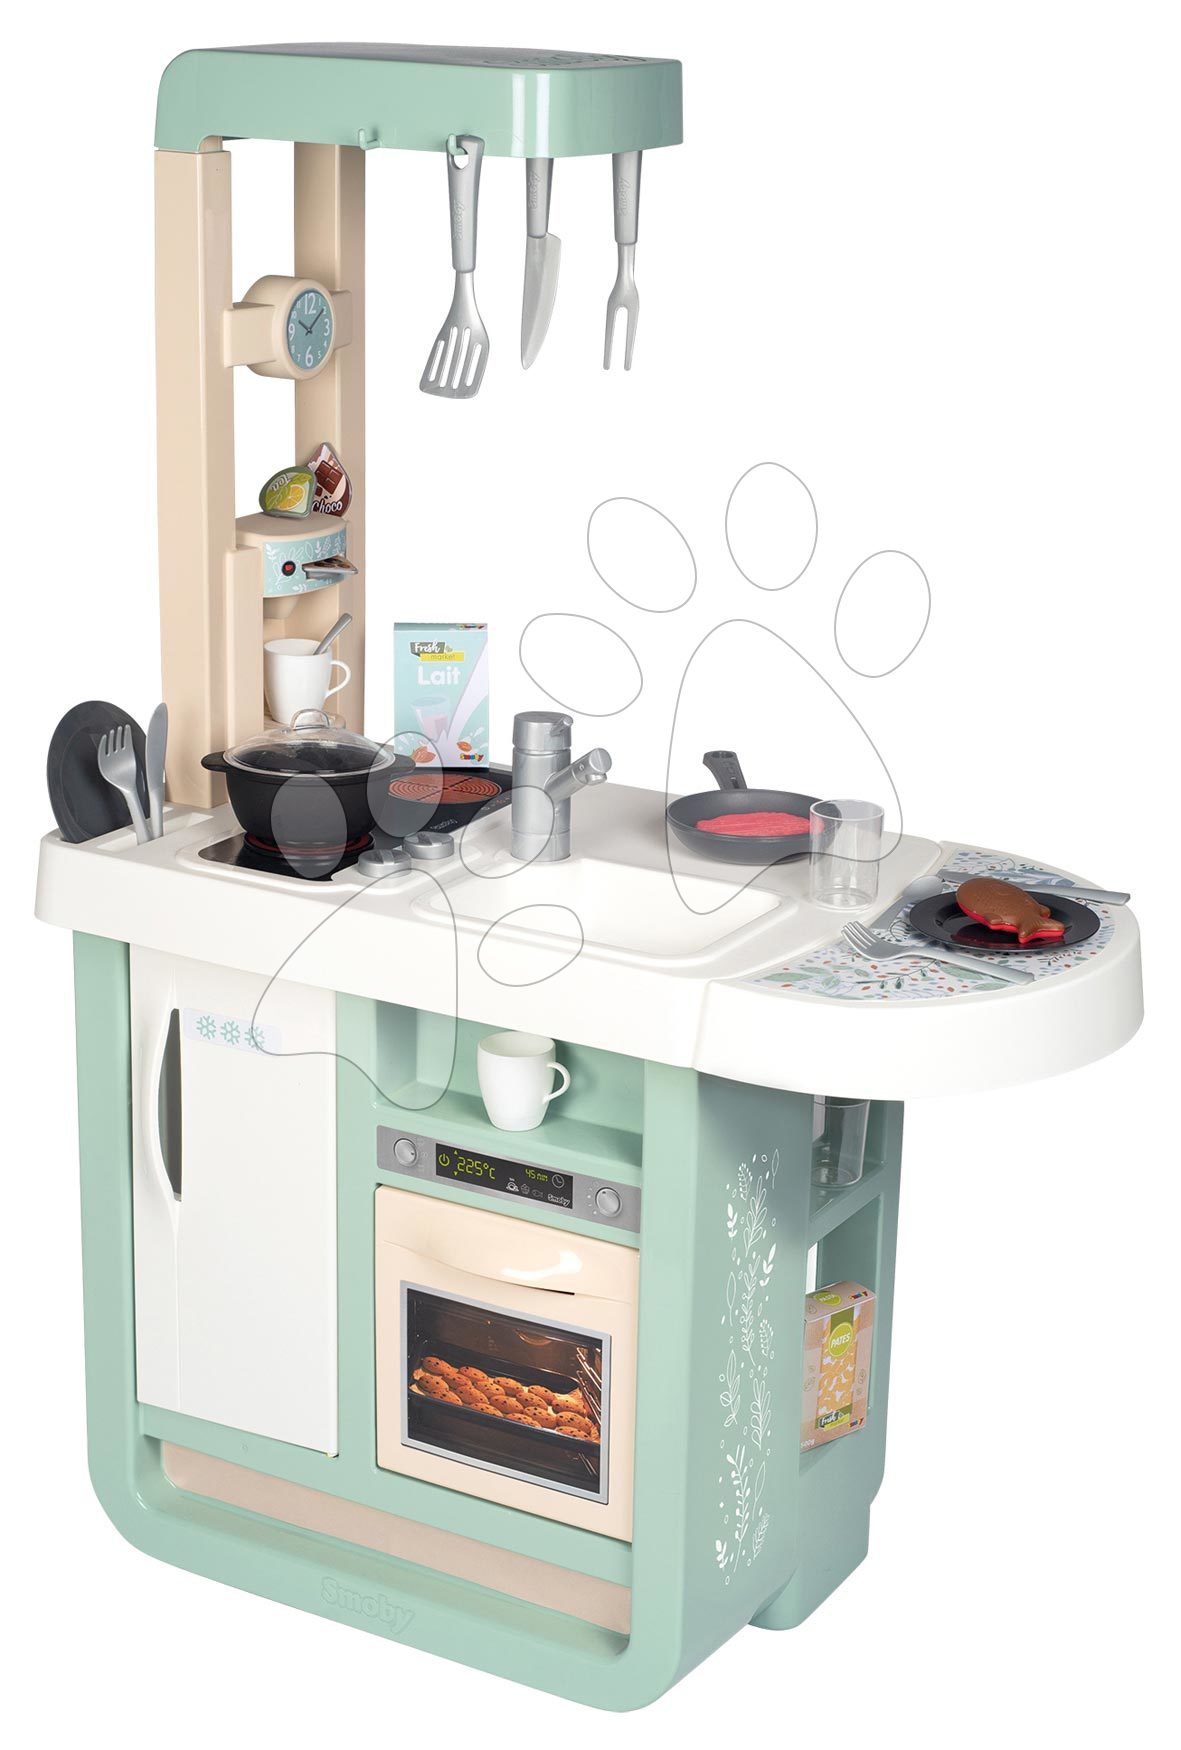 Kuchyňka s elektronickými funkcemi Cherry Kitchen Smoby s jídelním pultem a spotřebiči 25 doplňků – 96 cm výška/49 cm pult